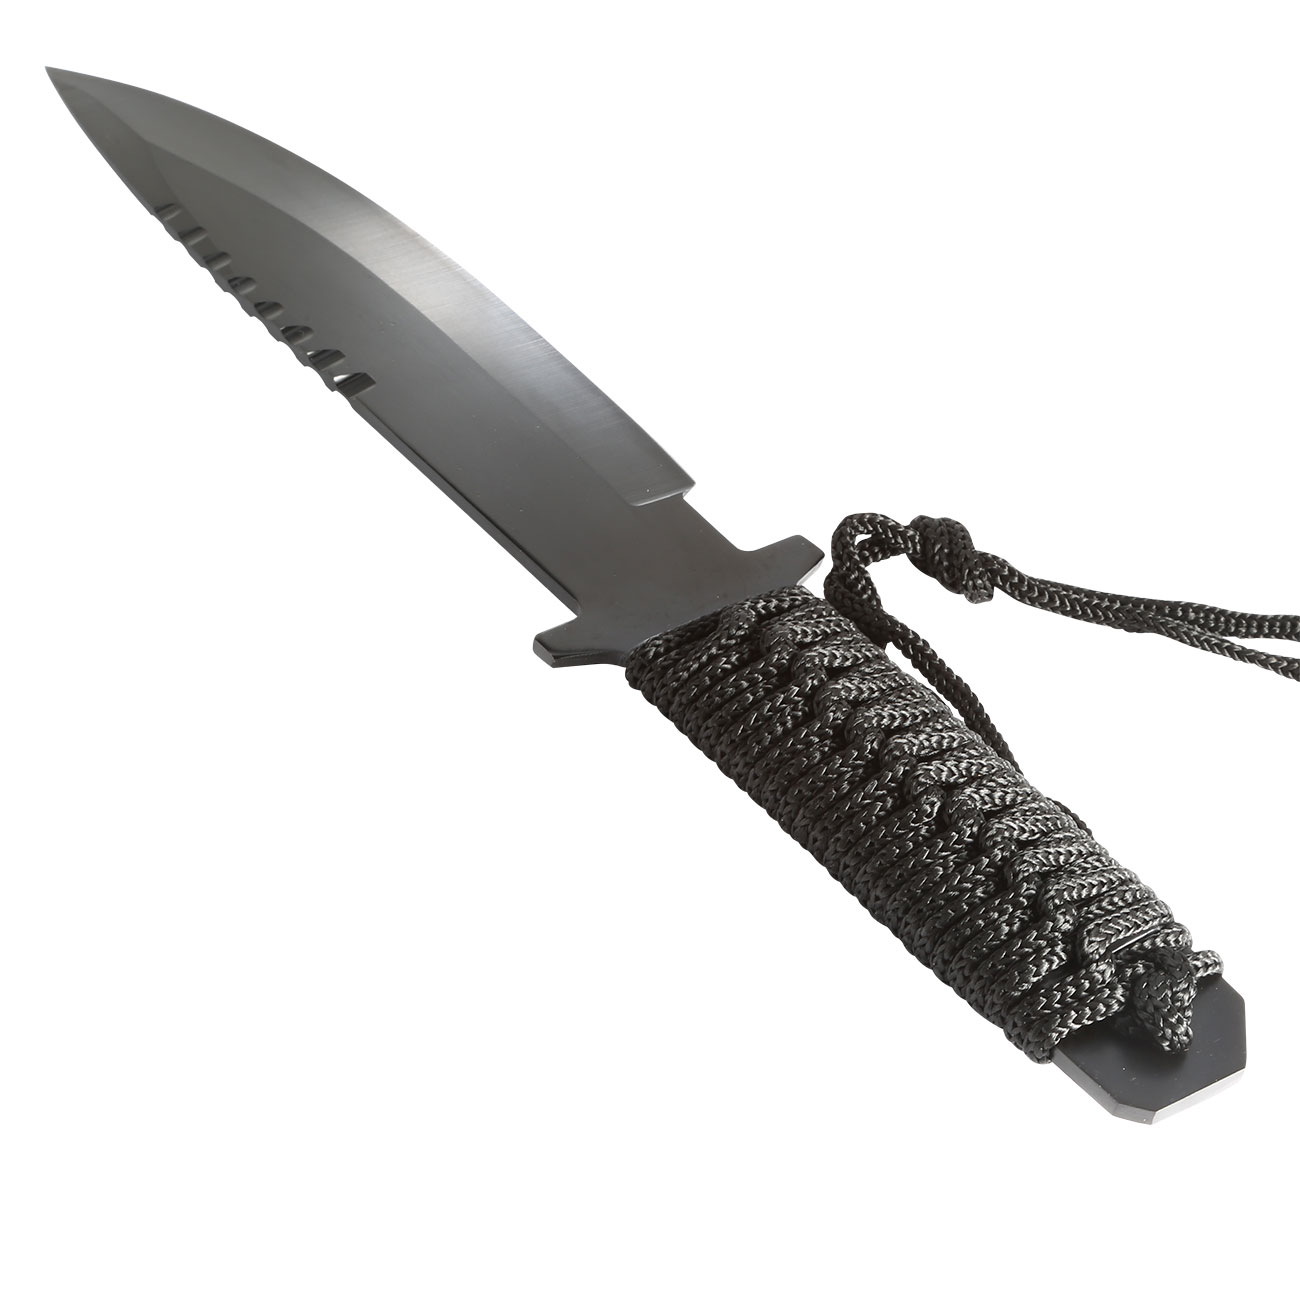  Combat Messer Recon 10 schwarz  (Modell A) Bild 1